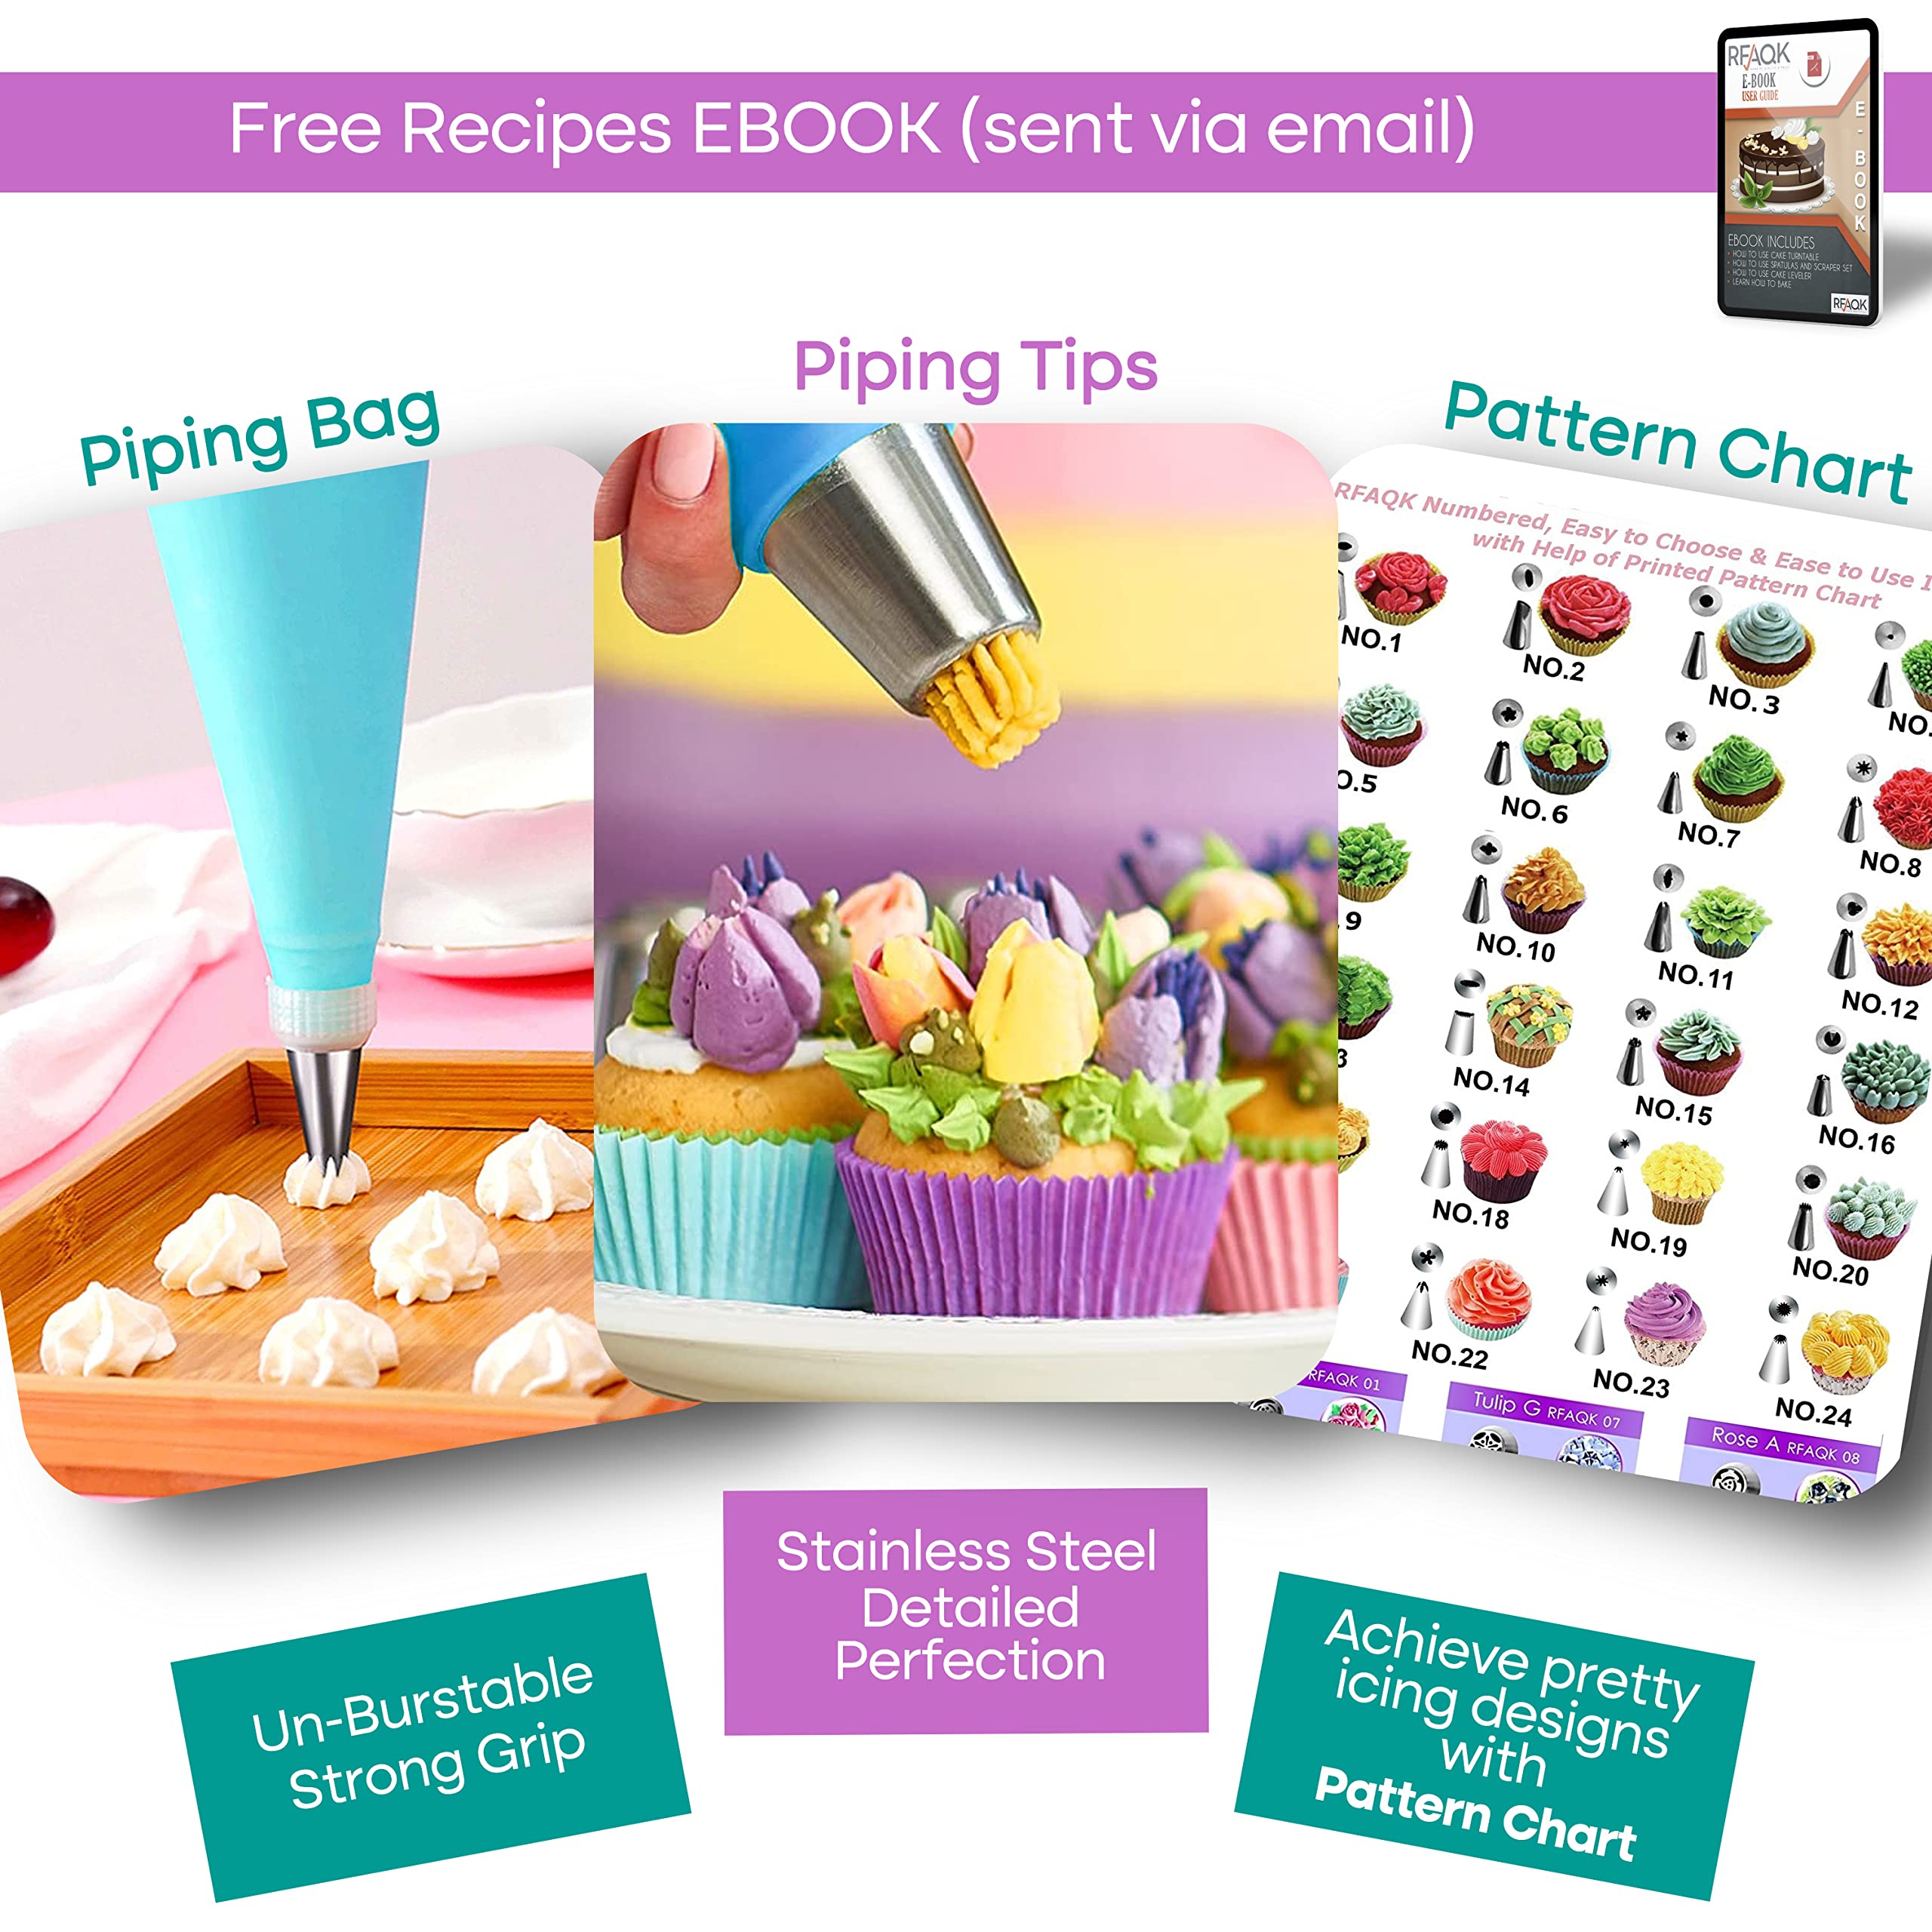 CAKE DECORATING KIT Baking Supplies Springform Pans Turntable Piping Tips  RFAQK 735632845261 | eBay